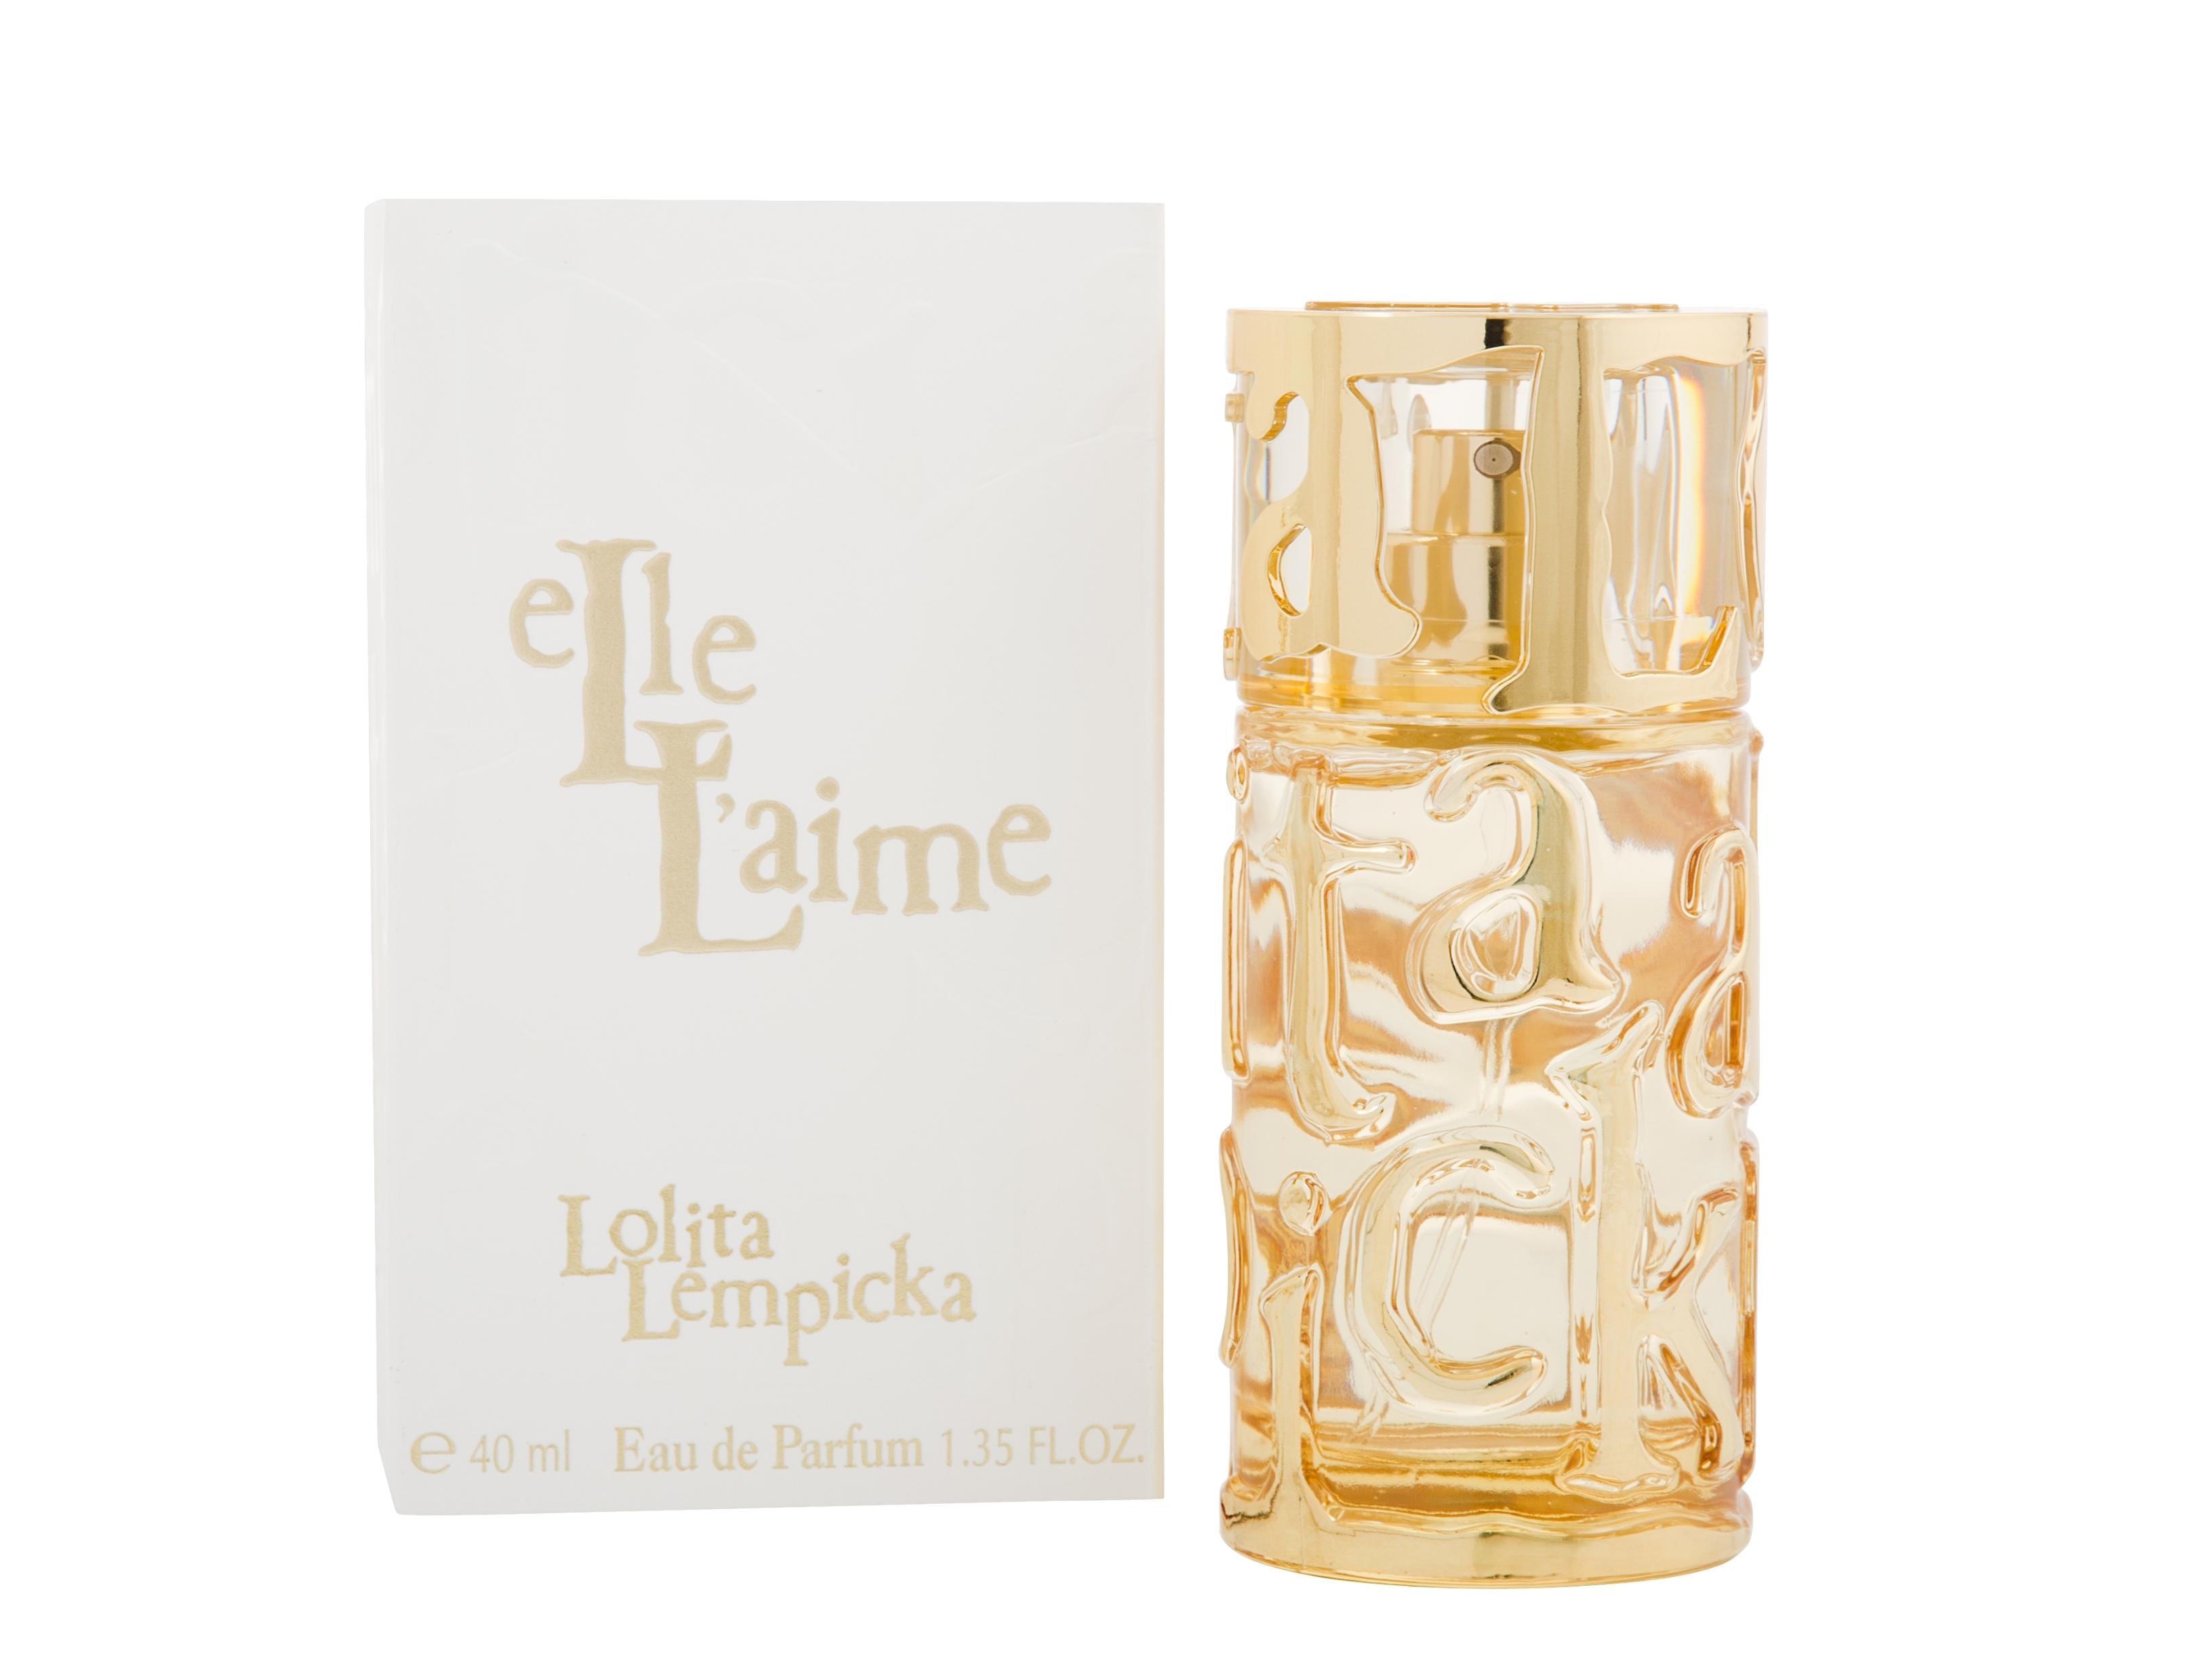 View Lolita Lempicka Elle Laime Eau de Parfum 40ml Spray information